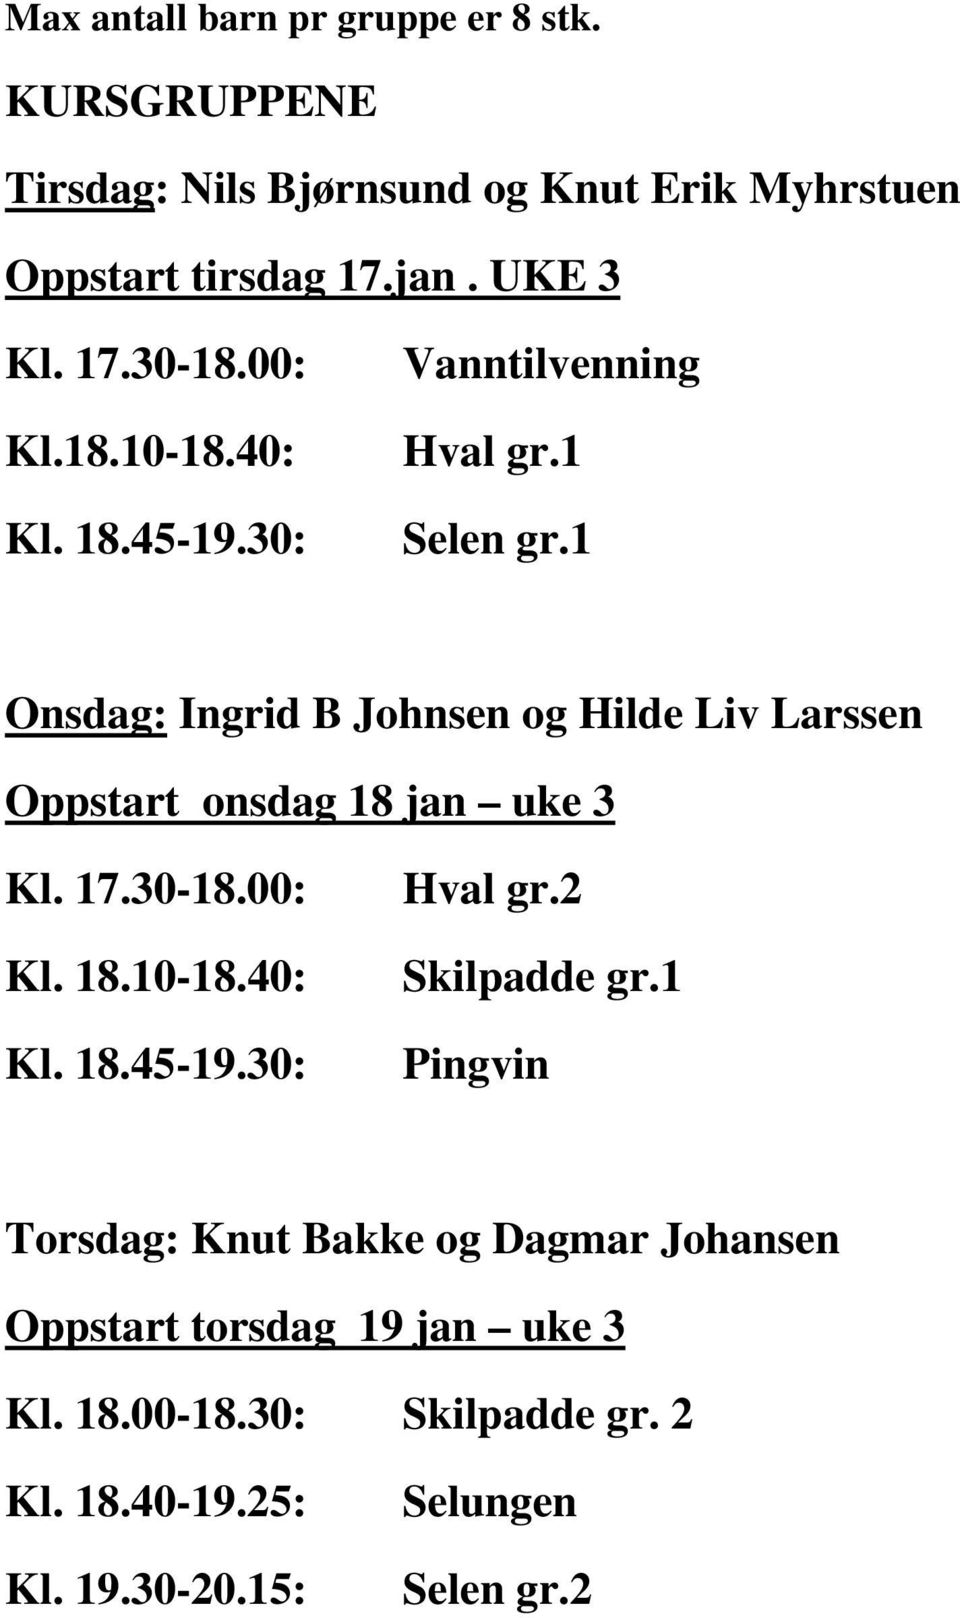 1 Onsdag: Ingrid B Johnsen og Hilde Liv Larssen Oppstart onsdag 18 jan uke 3 Kl. 17.30-18.00: Kl. 18.10-18.40: Kl. 18.45-19.